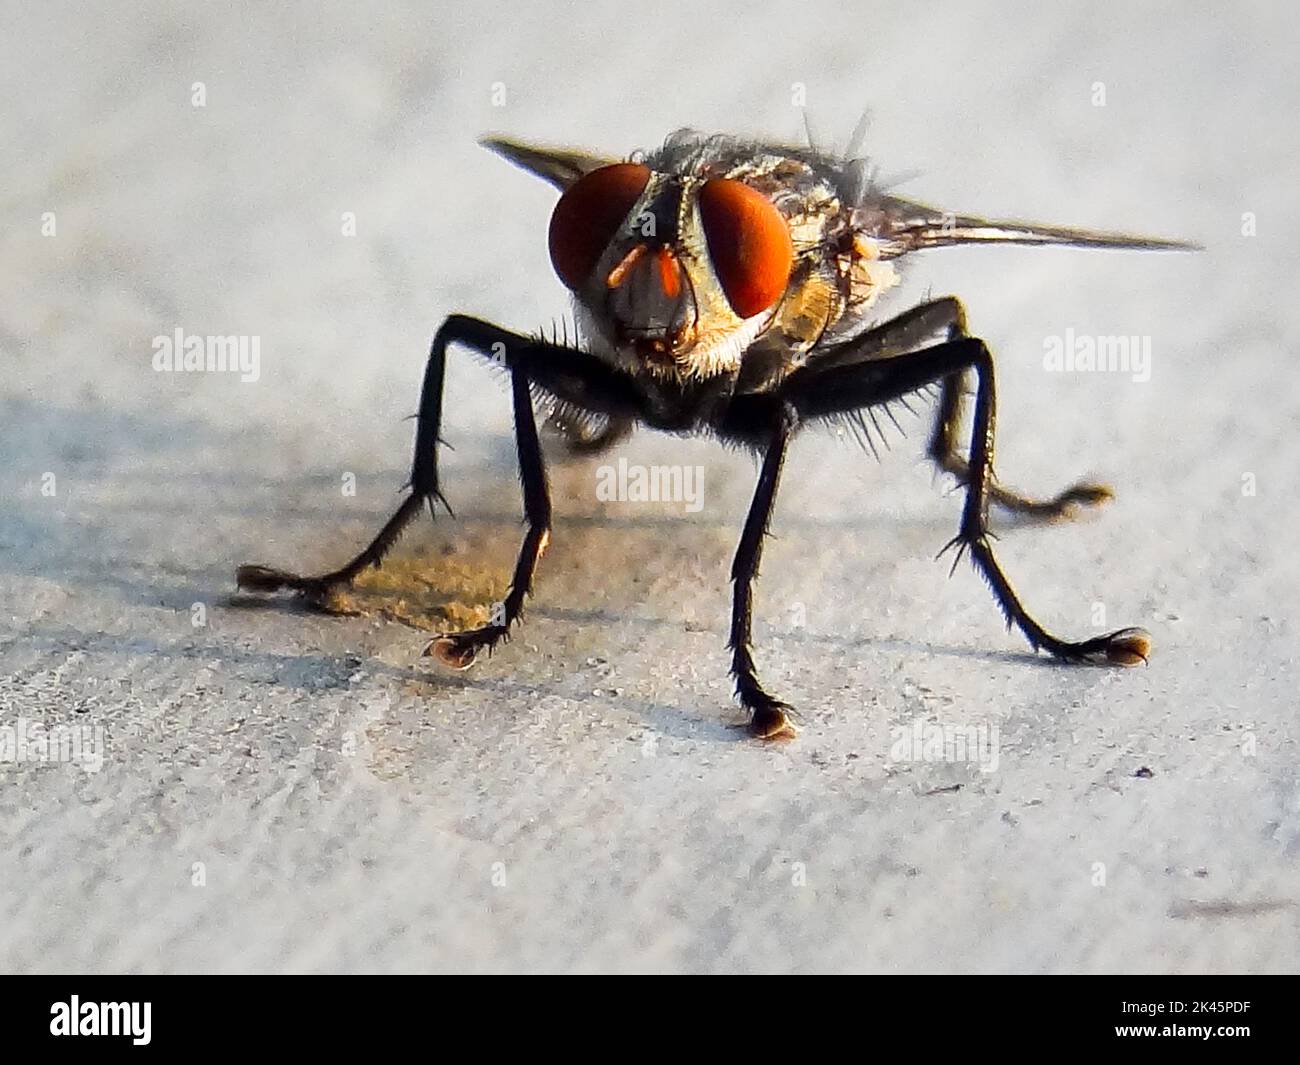 Gros plan d'une mouche de chair . Les Sarcophagidae sont une famille de mouches communément connues sous le nom de mouches à chair. Uttarakhand Inde. Banque D'Images